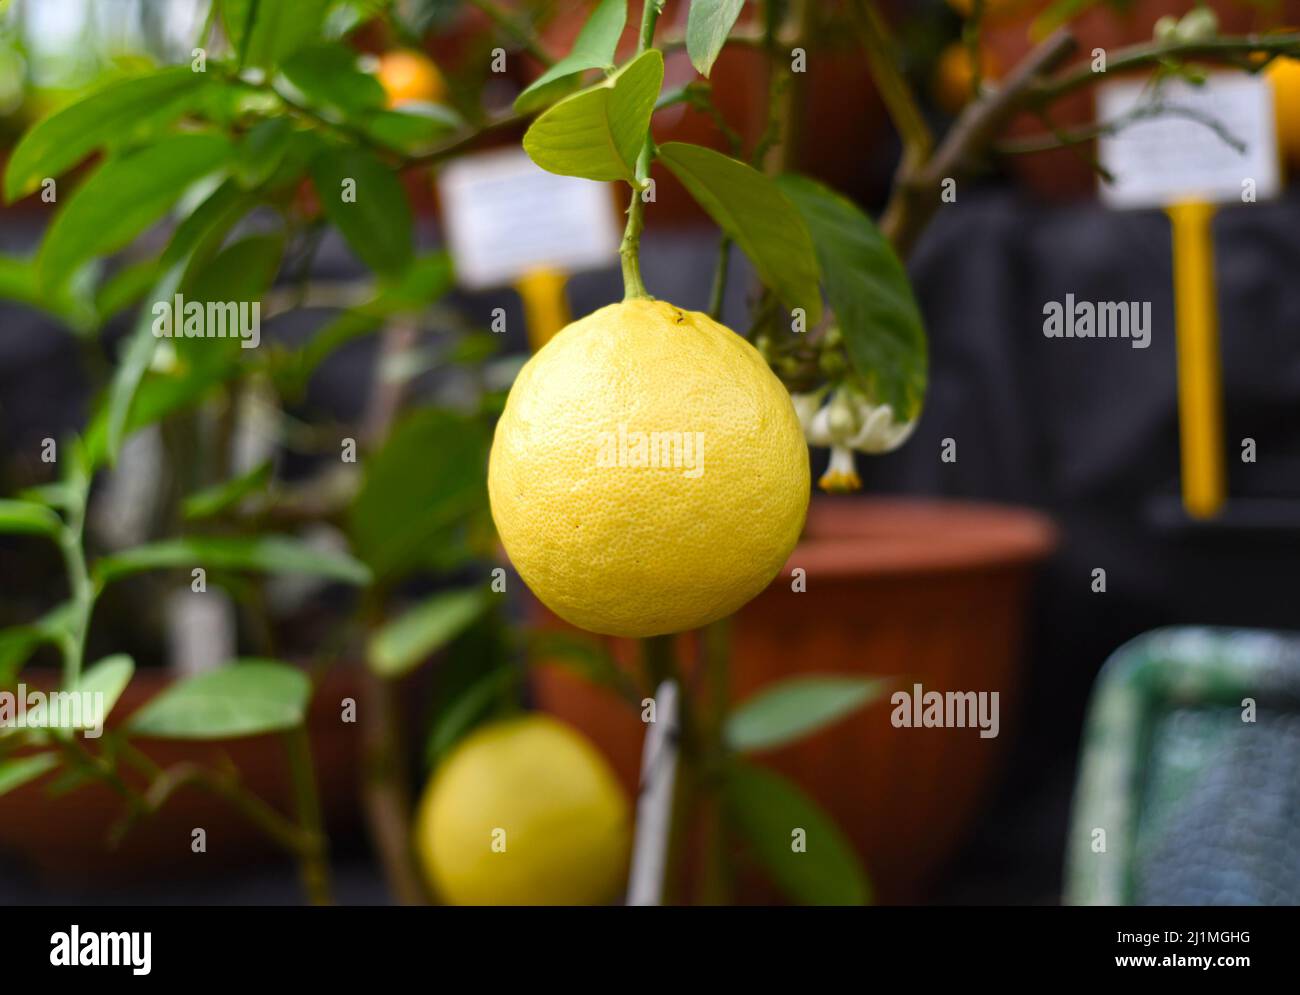 Limone maturo che cresce su un ramo Foto Stock